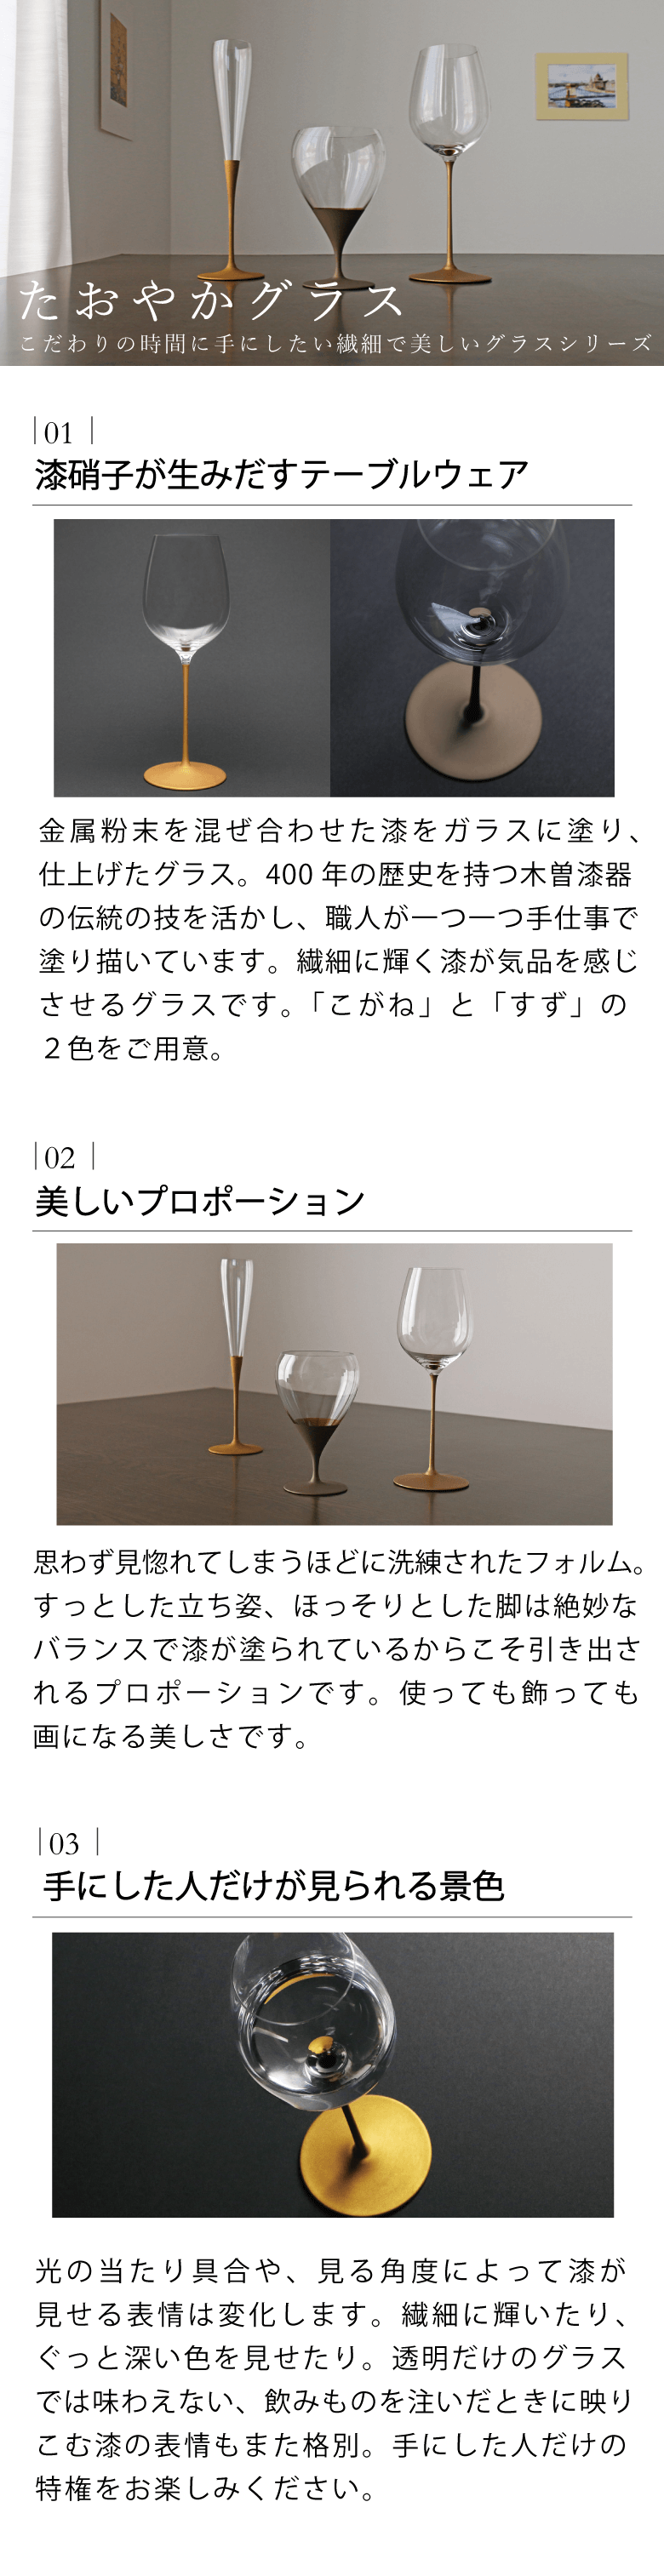 10208円 最新情報 JAPAN Glass 白漆 ワイングラス シャンパングラス 送料無料 日本製 和グラス Sサイズ Mサイズ Lサイズ ベージュ